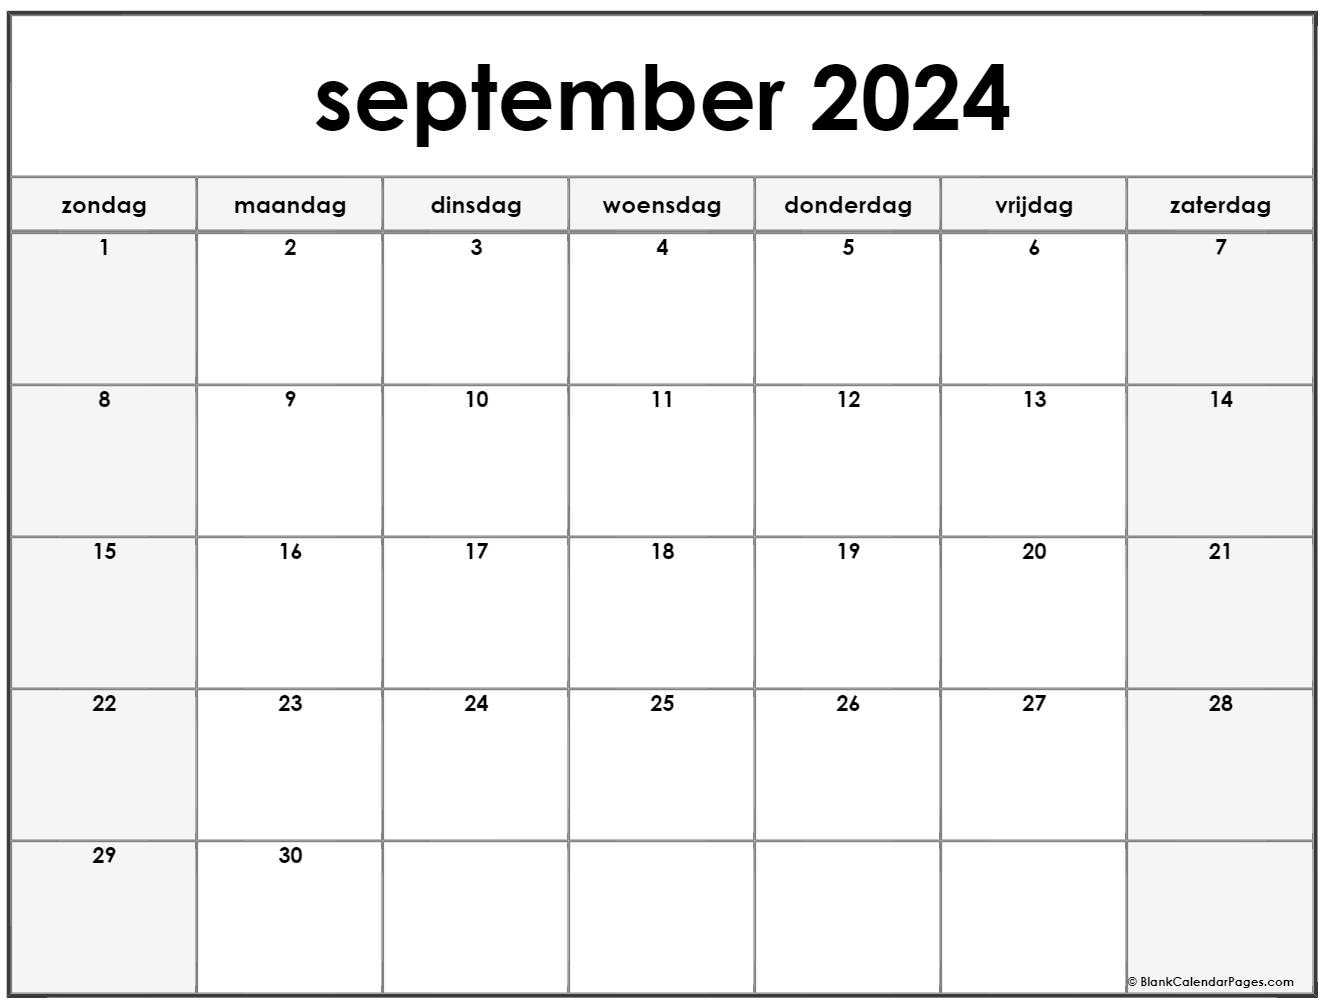 Inspecteur omverwerping Omtrek september 2022 kalender Nederlandse | Kalender september